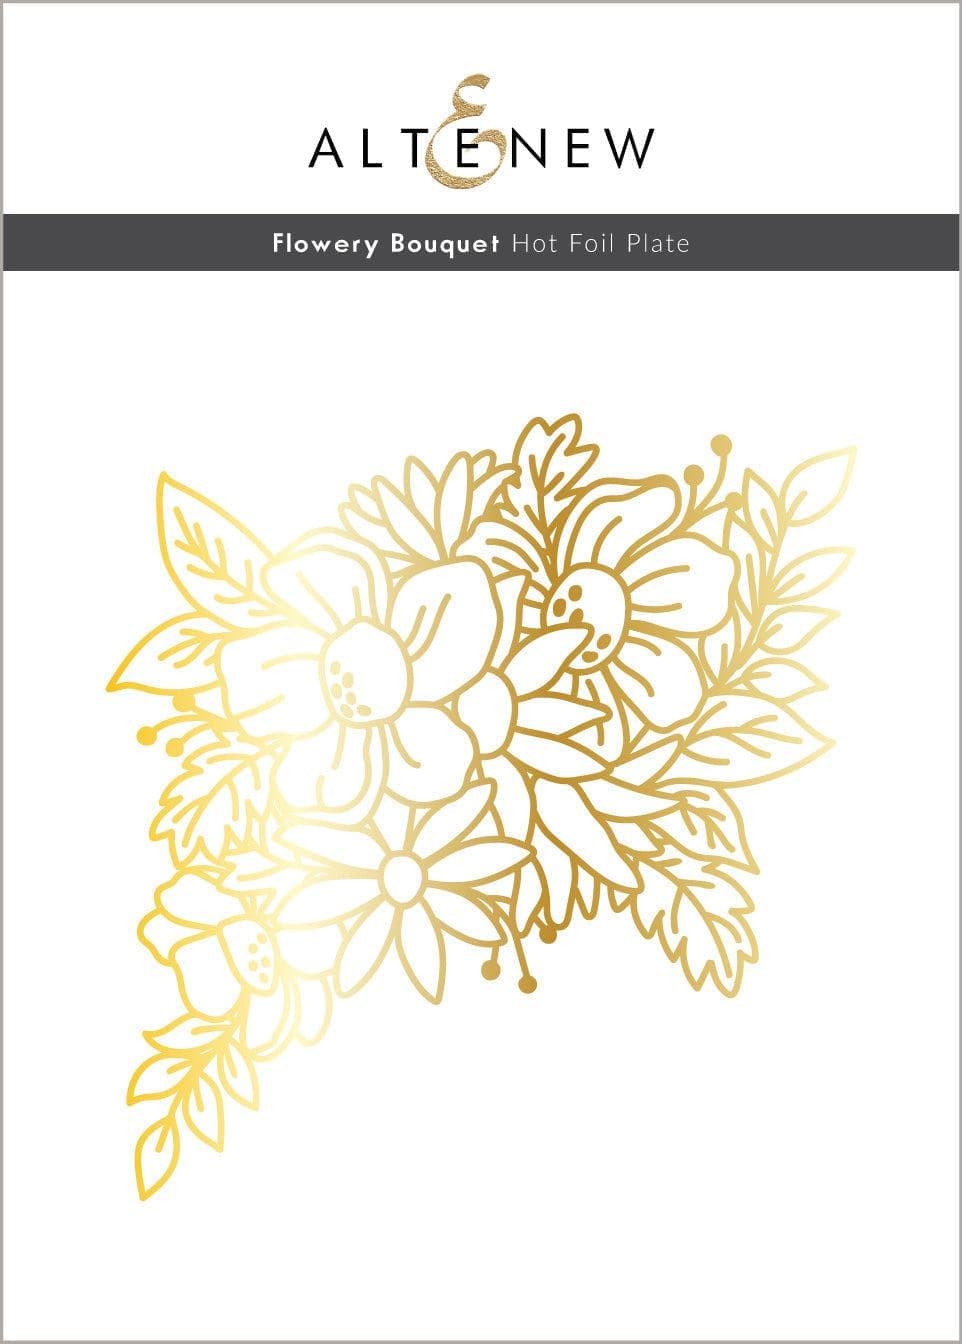 Altenew Hot Foil Plate & Stencil Bundle Flowery Bouquet